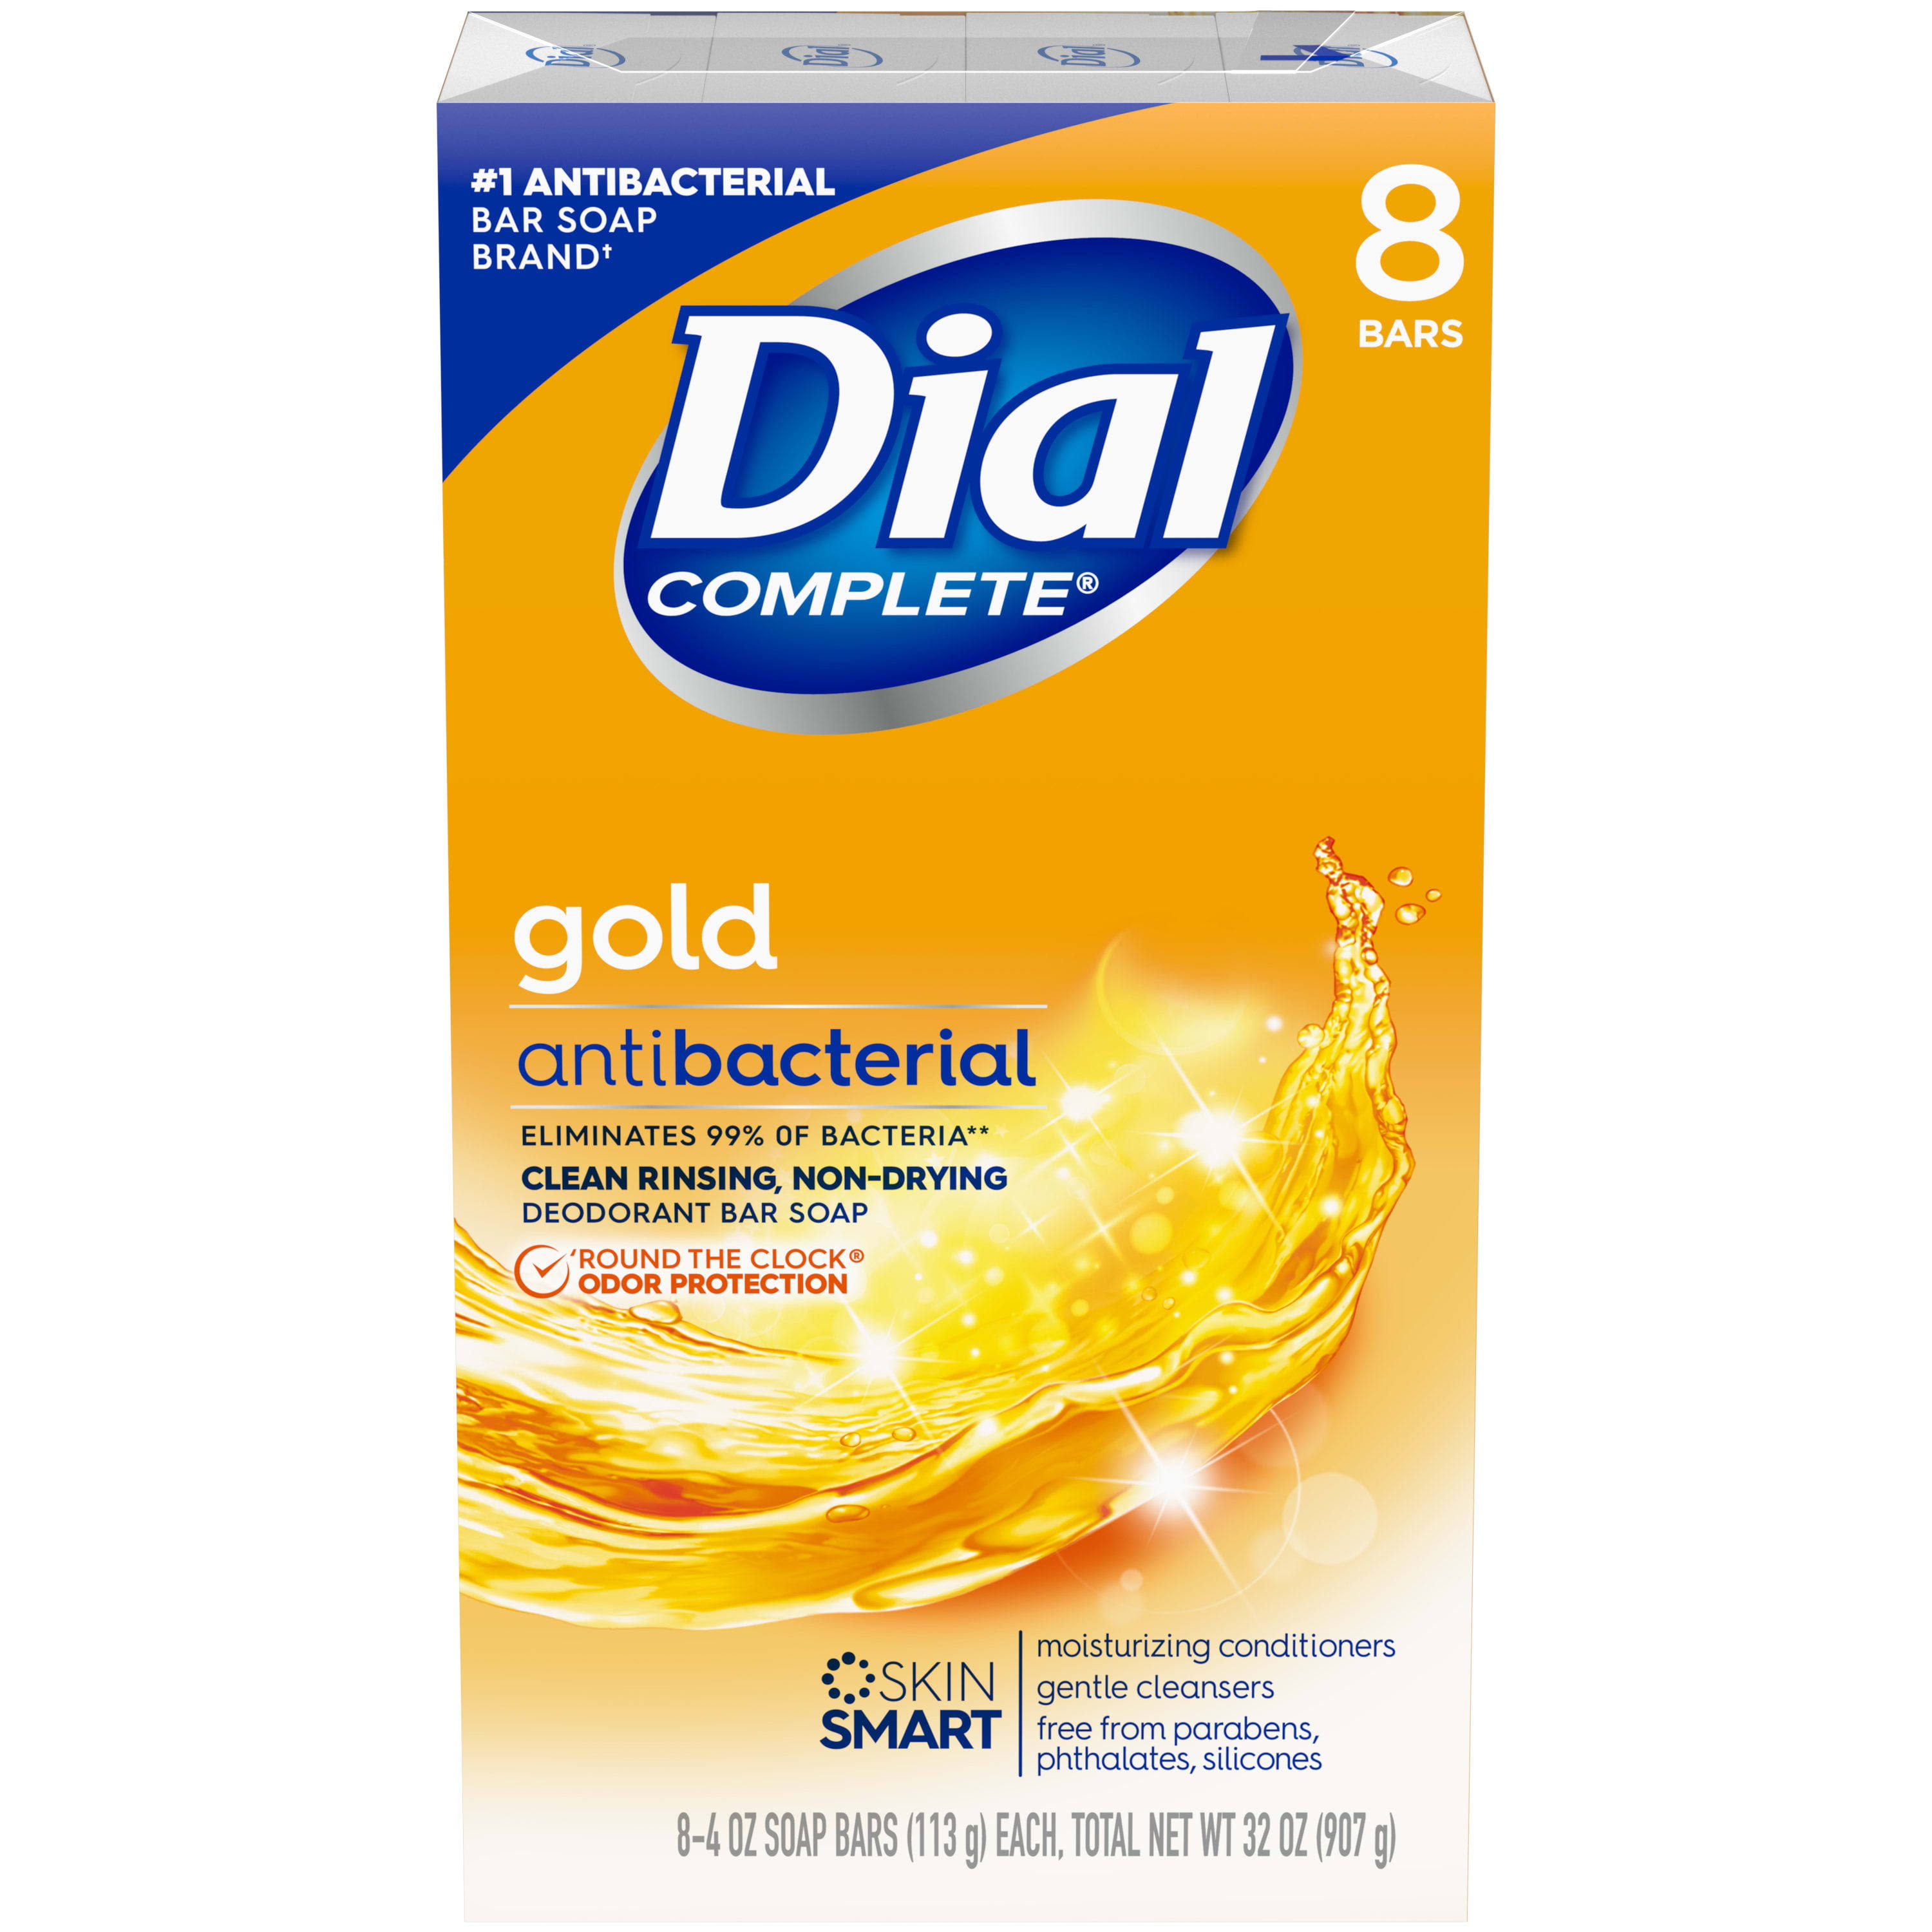 Dial Bar Gold Antibacterial Deodorant Soap - 4oz, 8pk